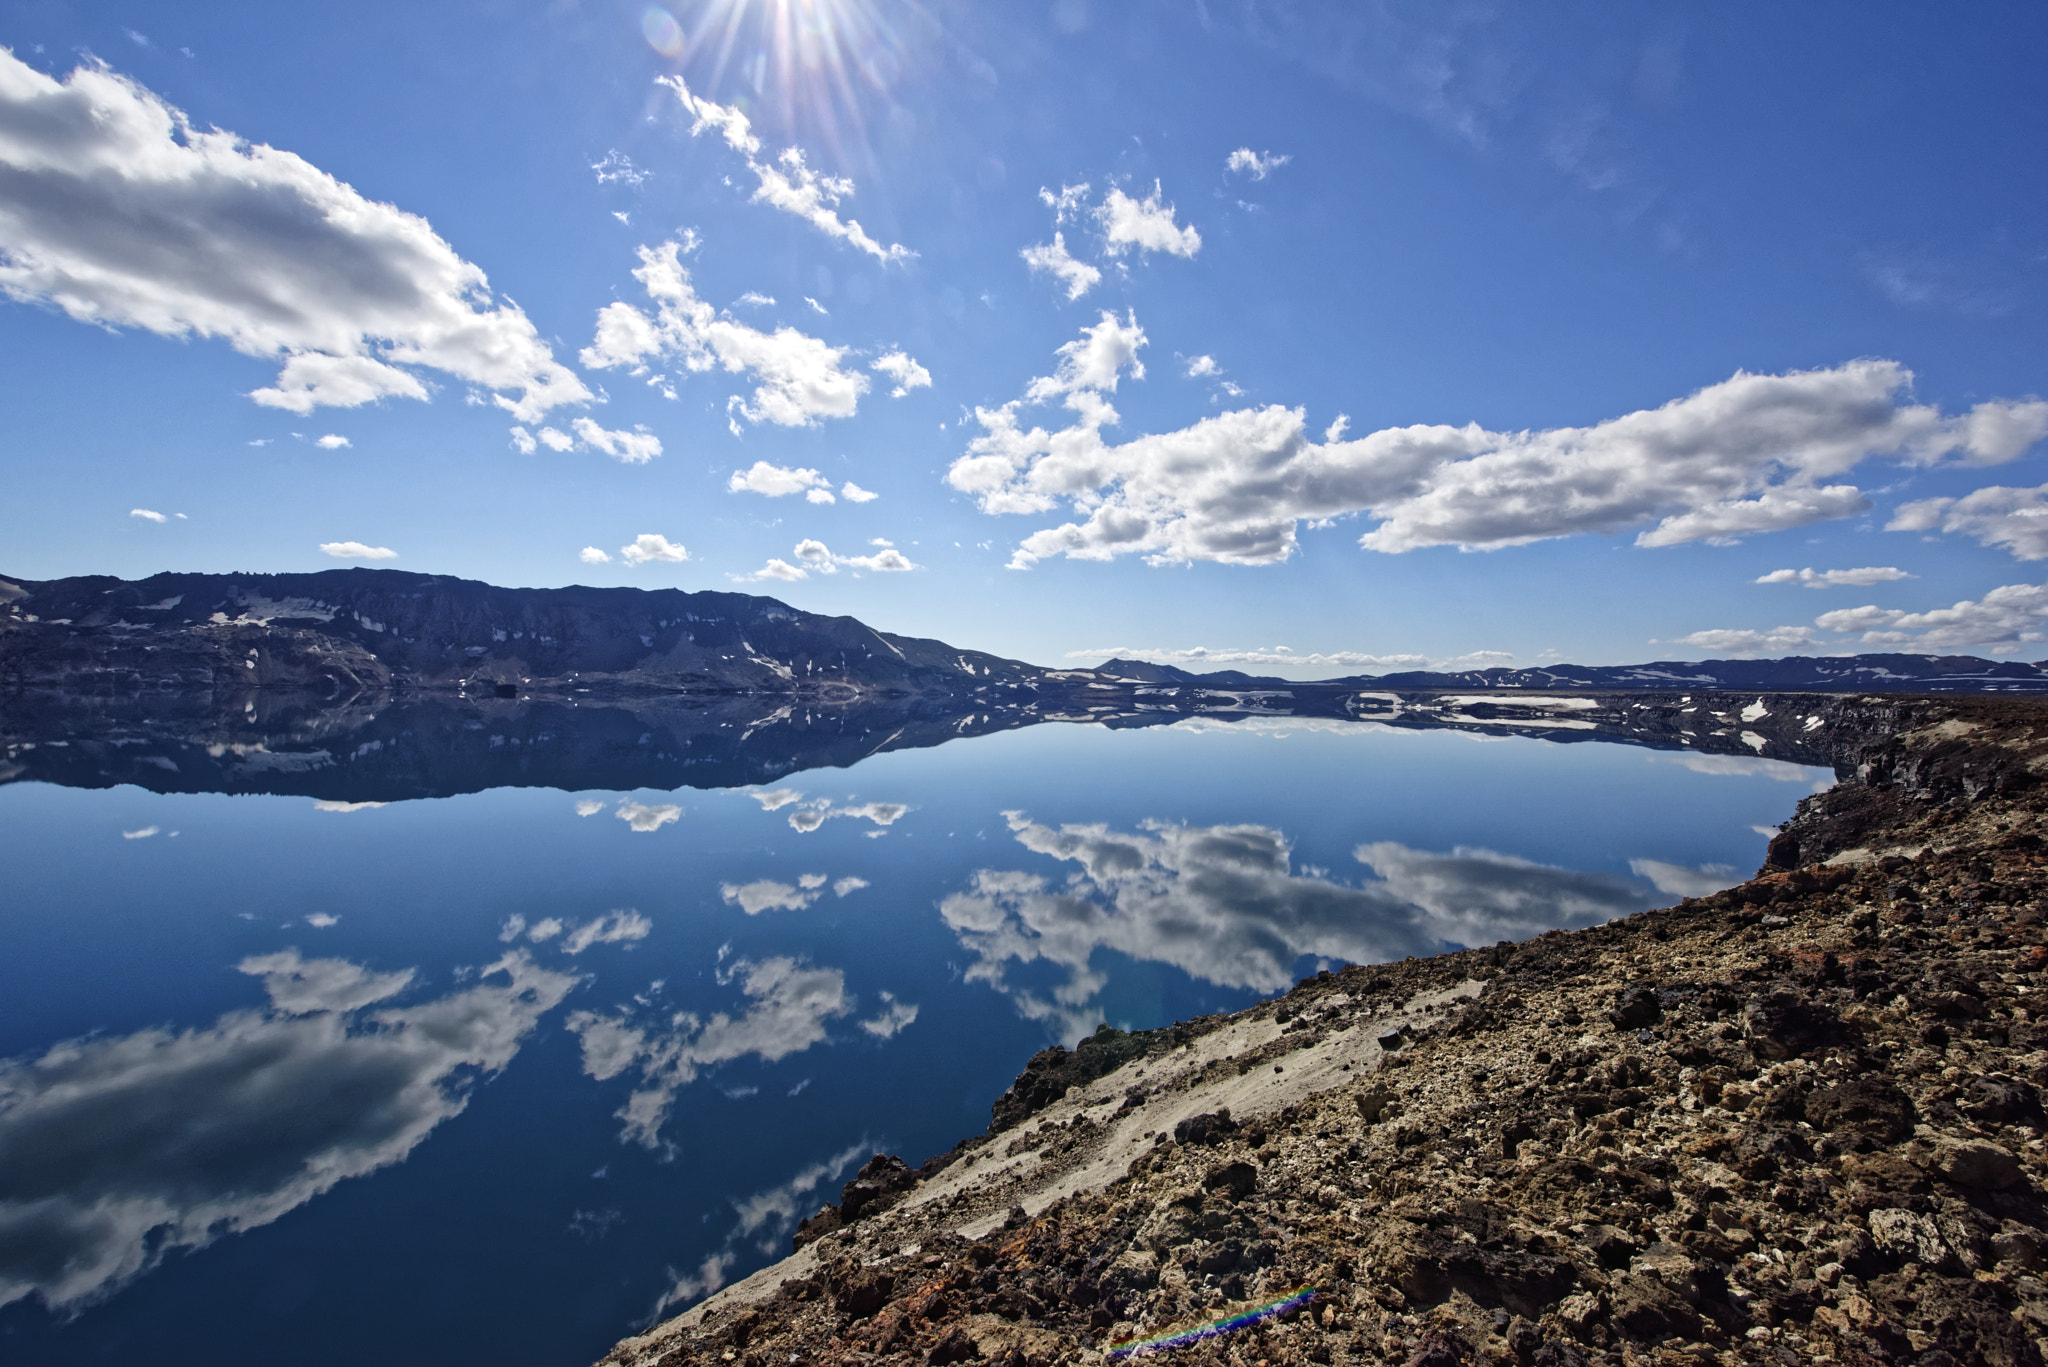 Nikon AF-S Nikkor 14-24mm F2.8G ED sample photo. The lake oskjuvatn in the highlands of iceland. photography